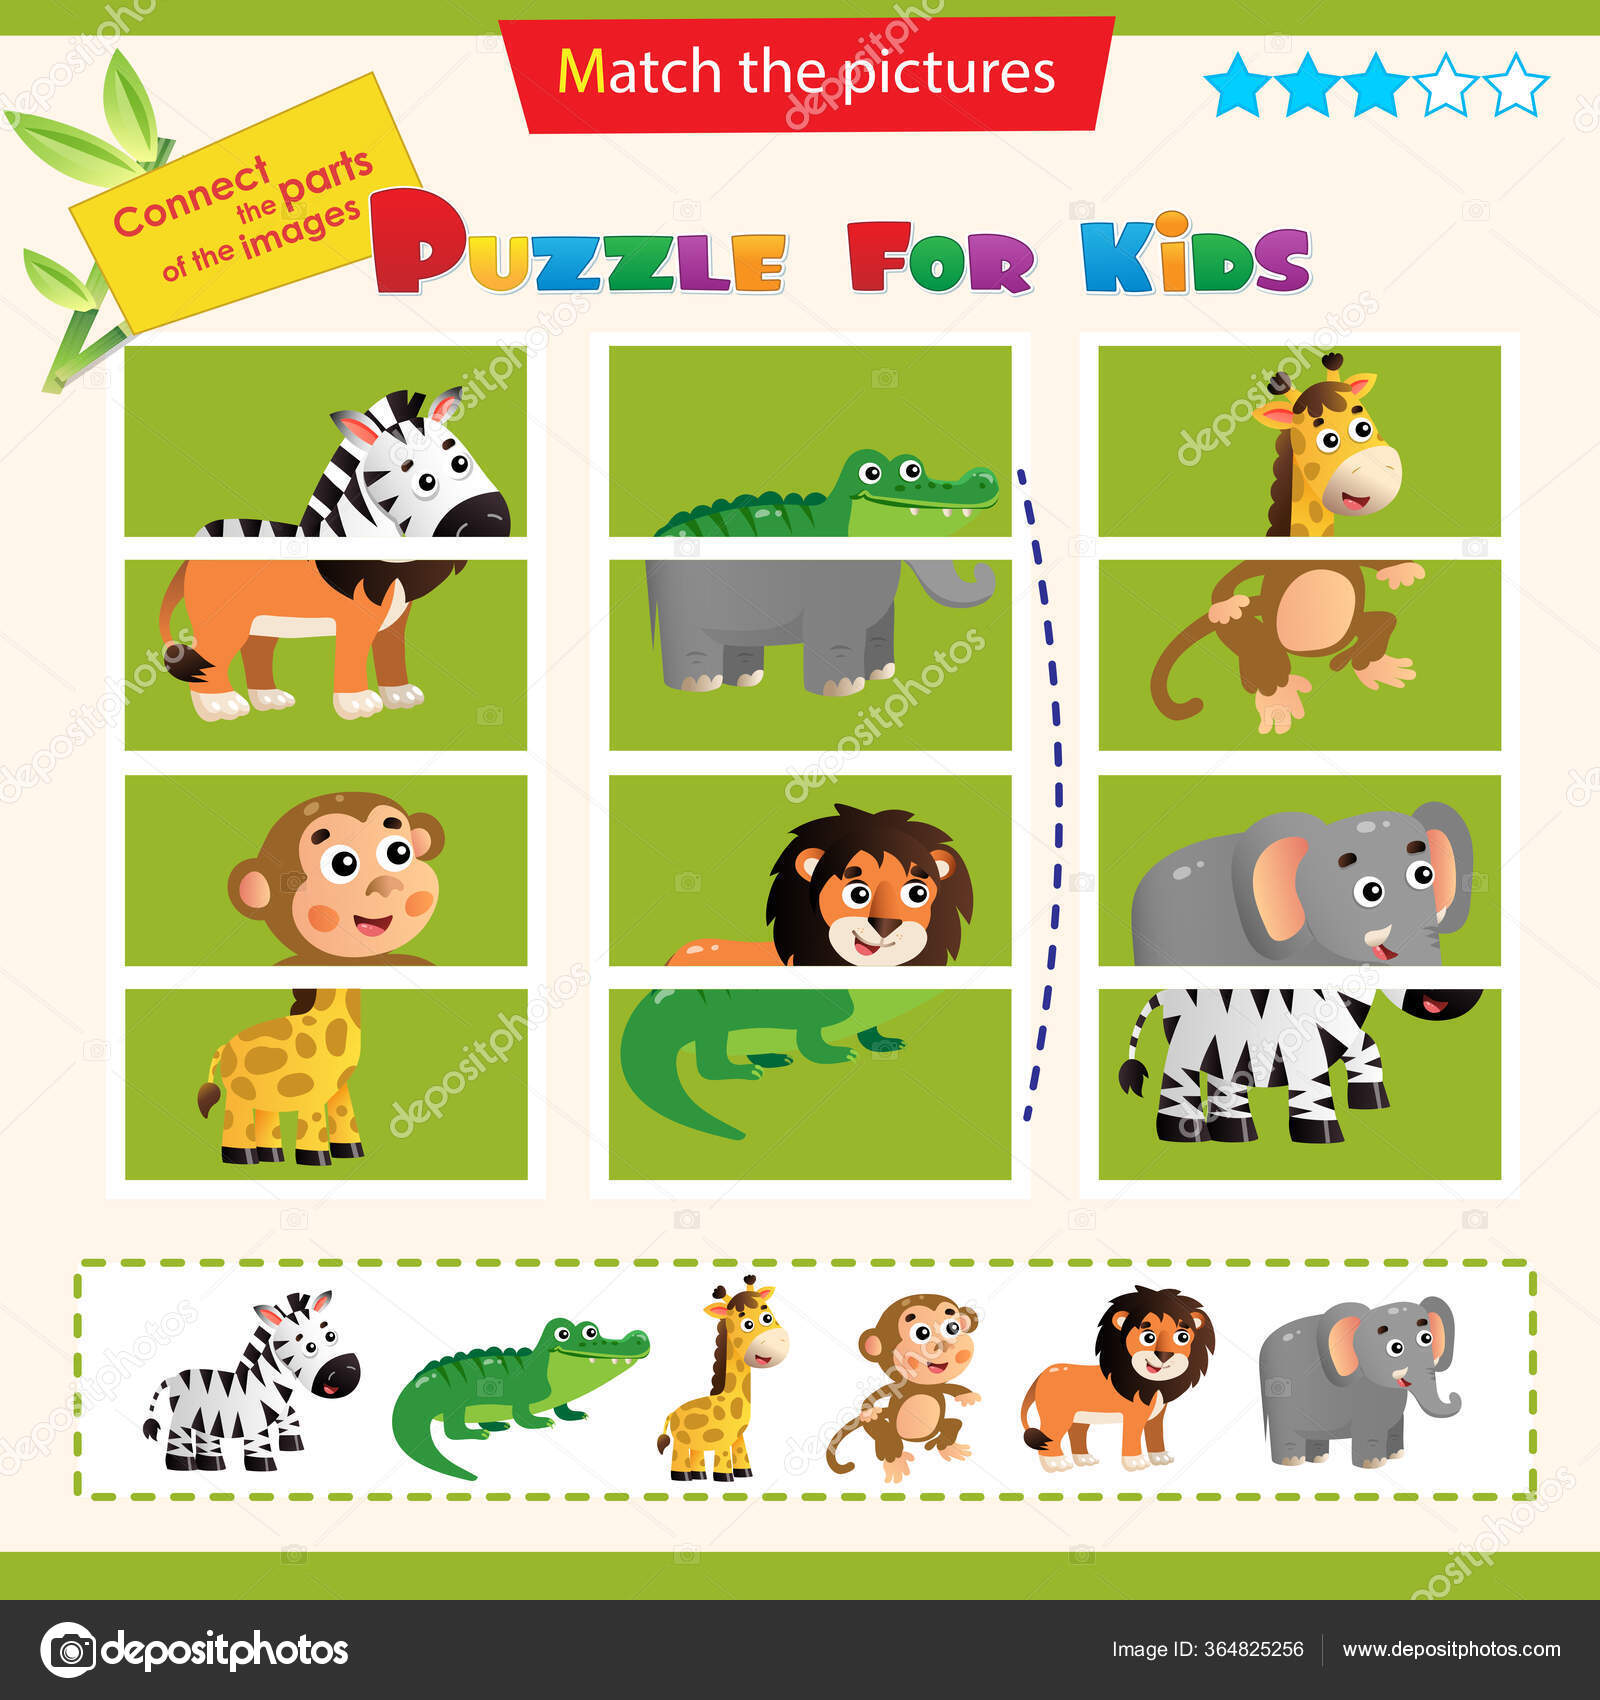 Um jogo para crianças combine os animais com suas comidas favoritas